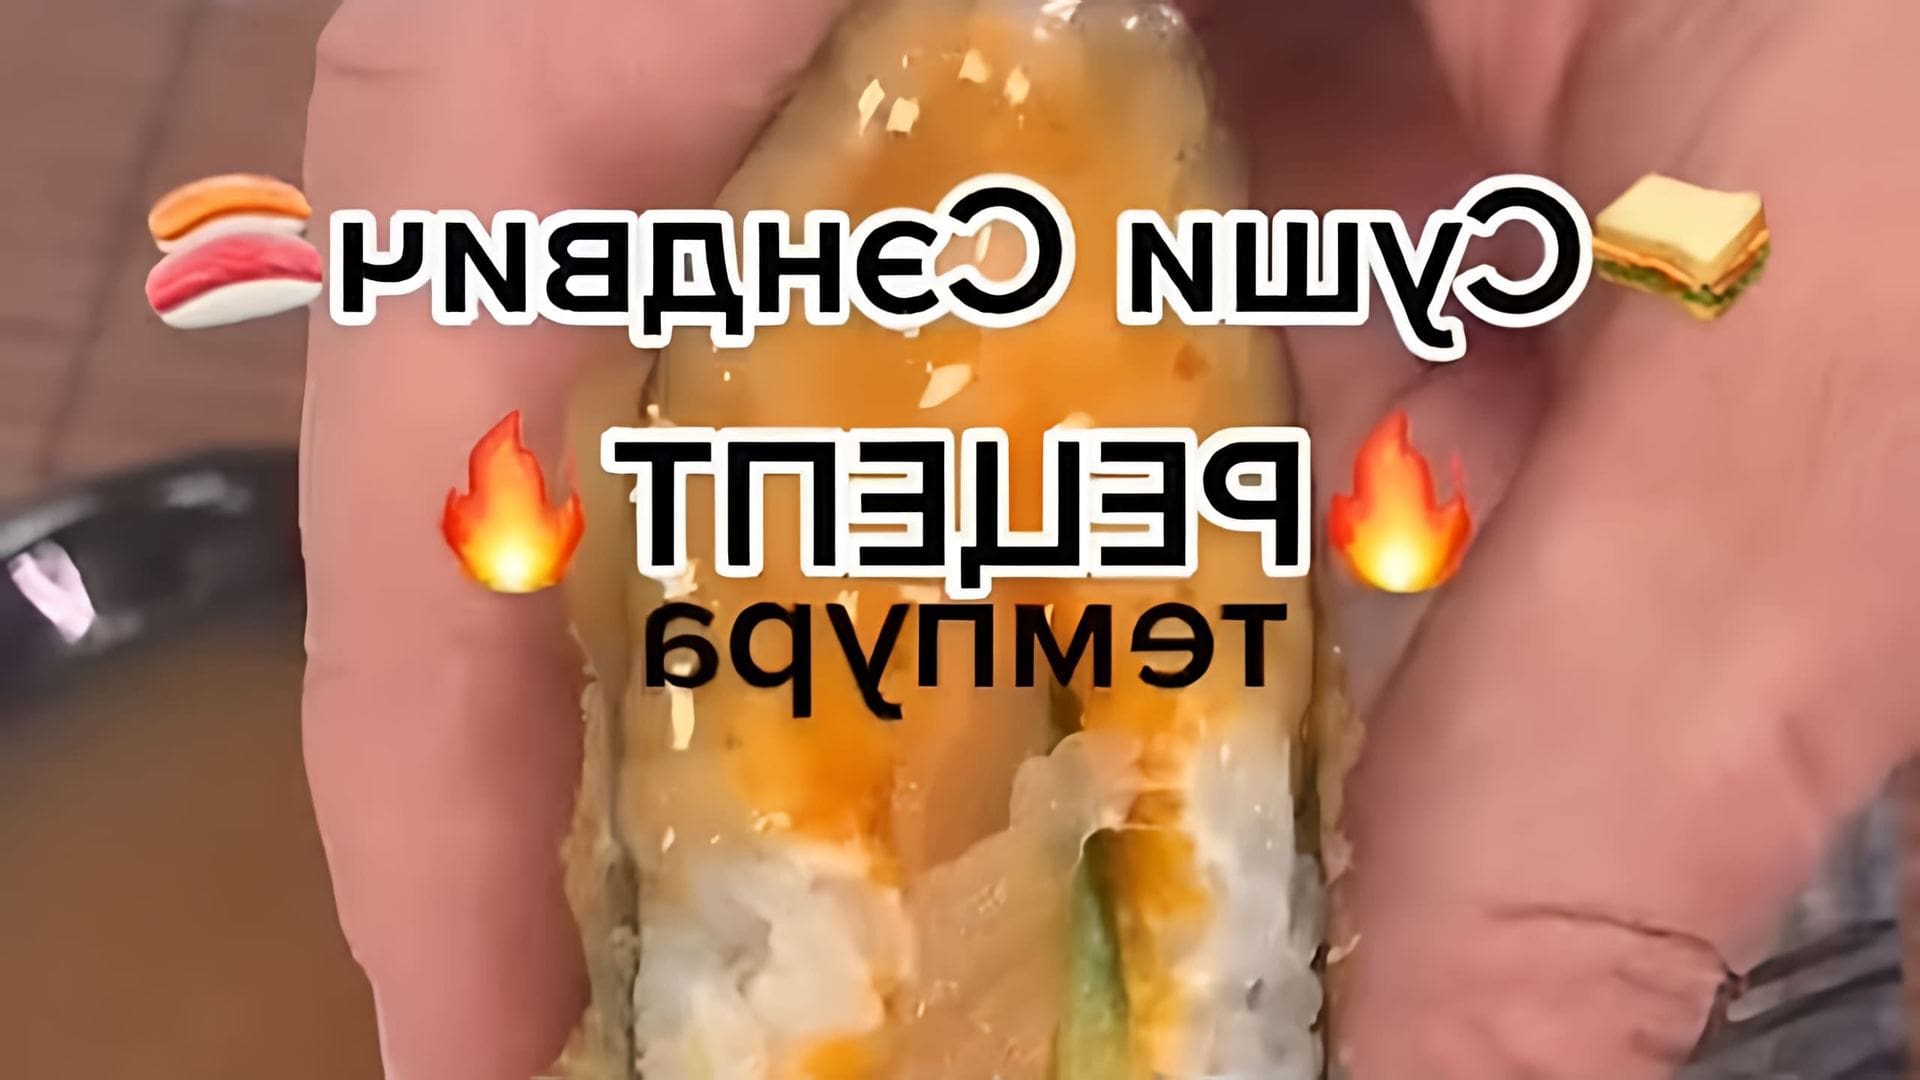 В этом видео демонстрируется процесс приготовления суши сэнвича в домашних условиях